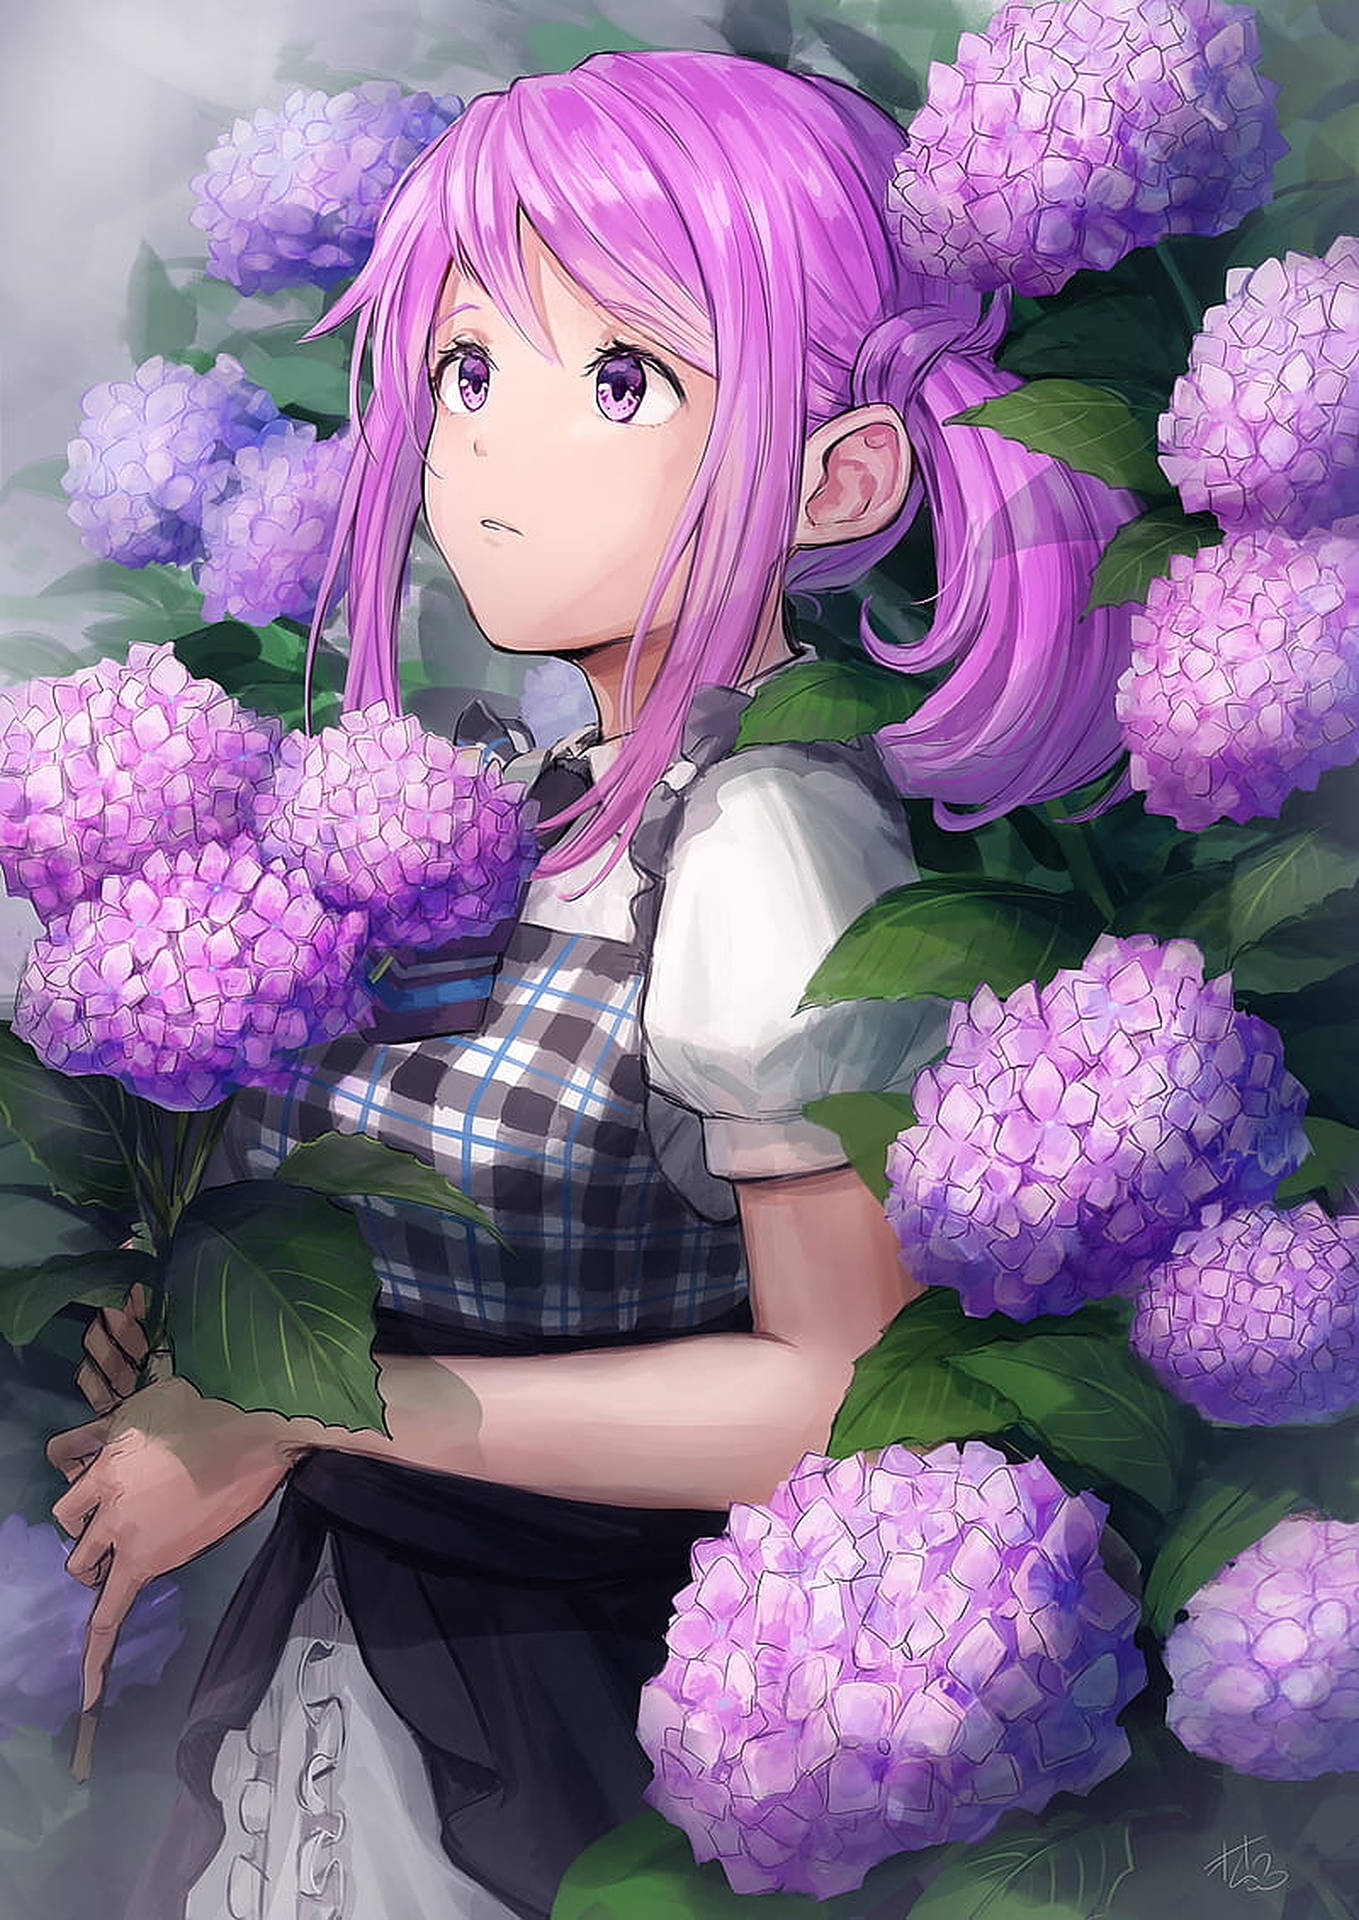 Cute Anime Girl Profile Picture Wallpaper